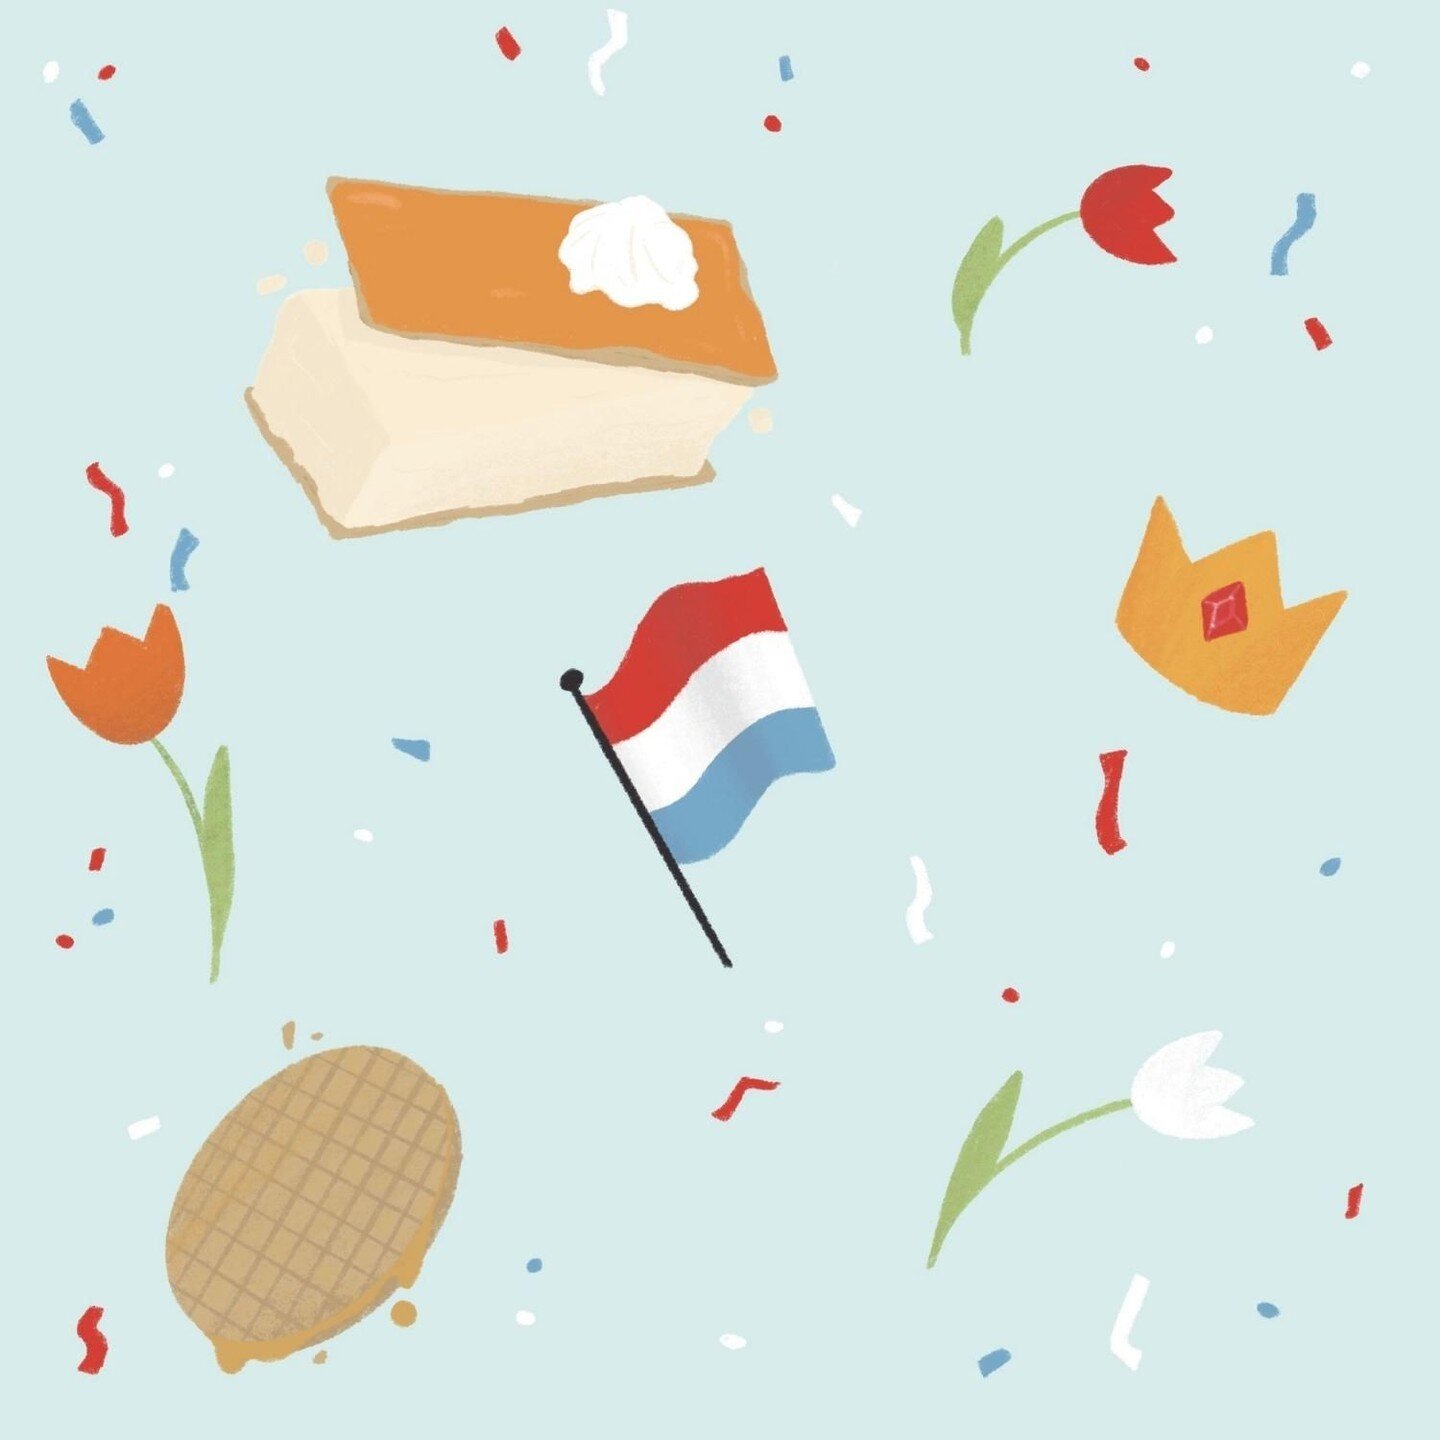 Happy Koningsdag! 🧡👑 Geniet van deze feestelijke dag vol gezelligheid, oranje gekte en natuurlijk de vrijmarkt. 🎉🛍️ 

#koningsdag #oranjeboven #feestdag #vrijmarkt #gezelligheid #nederland #culemborg #koningwillemalexander #maxima #koningsdag2023